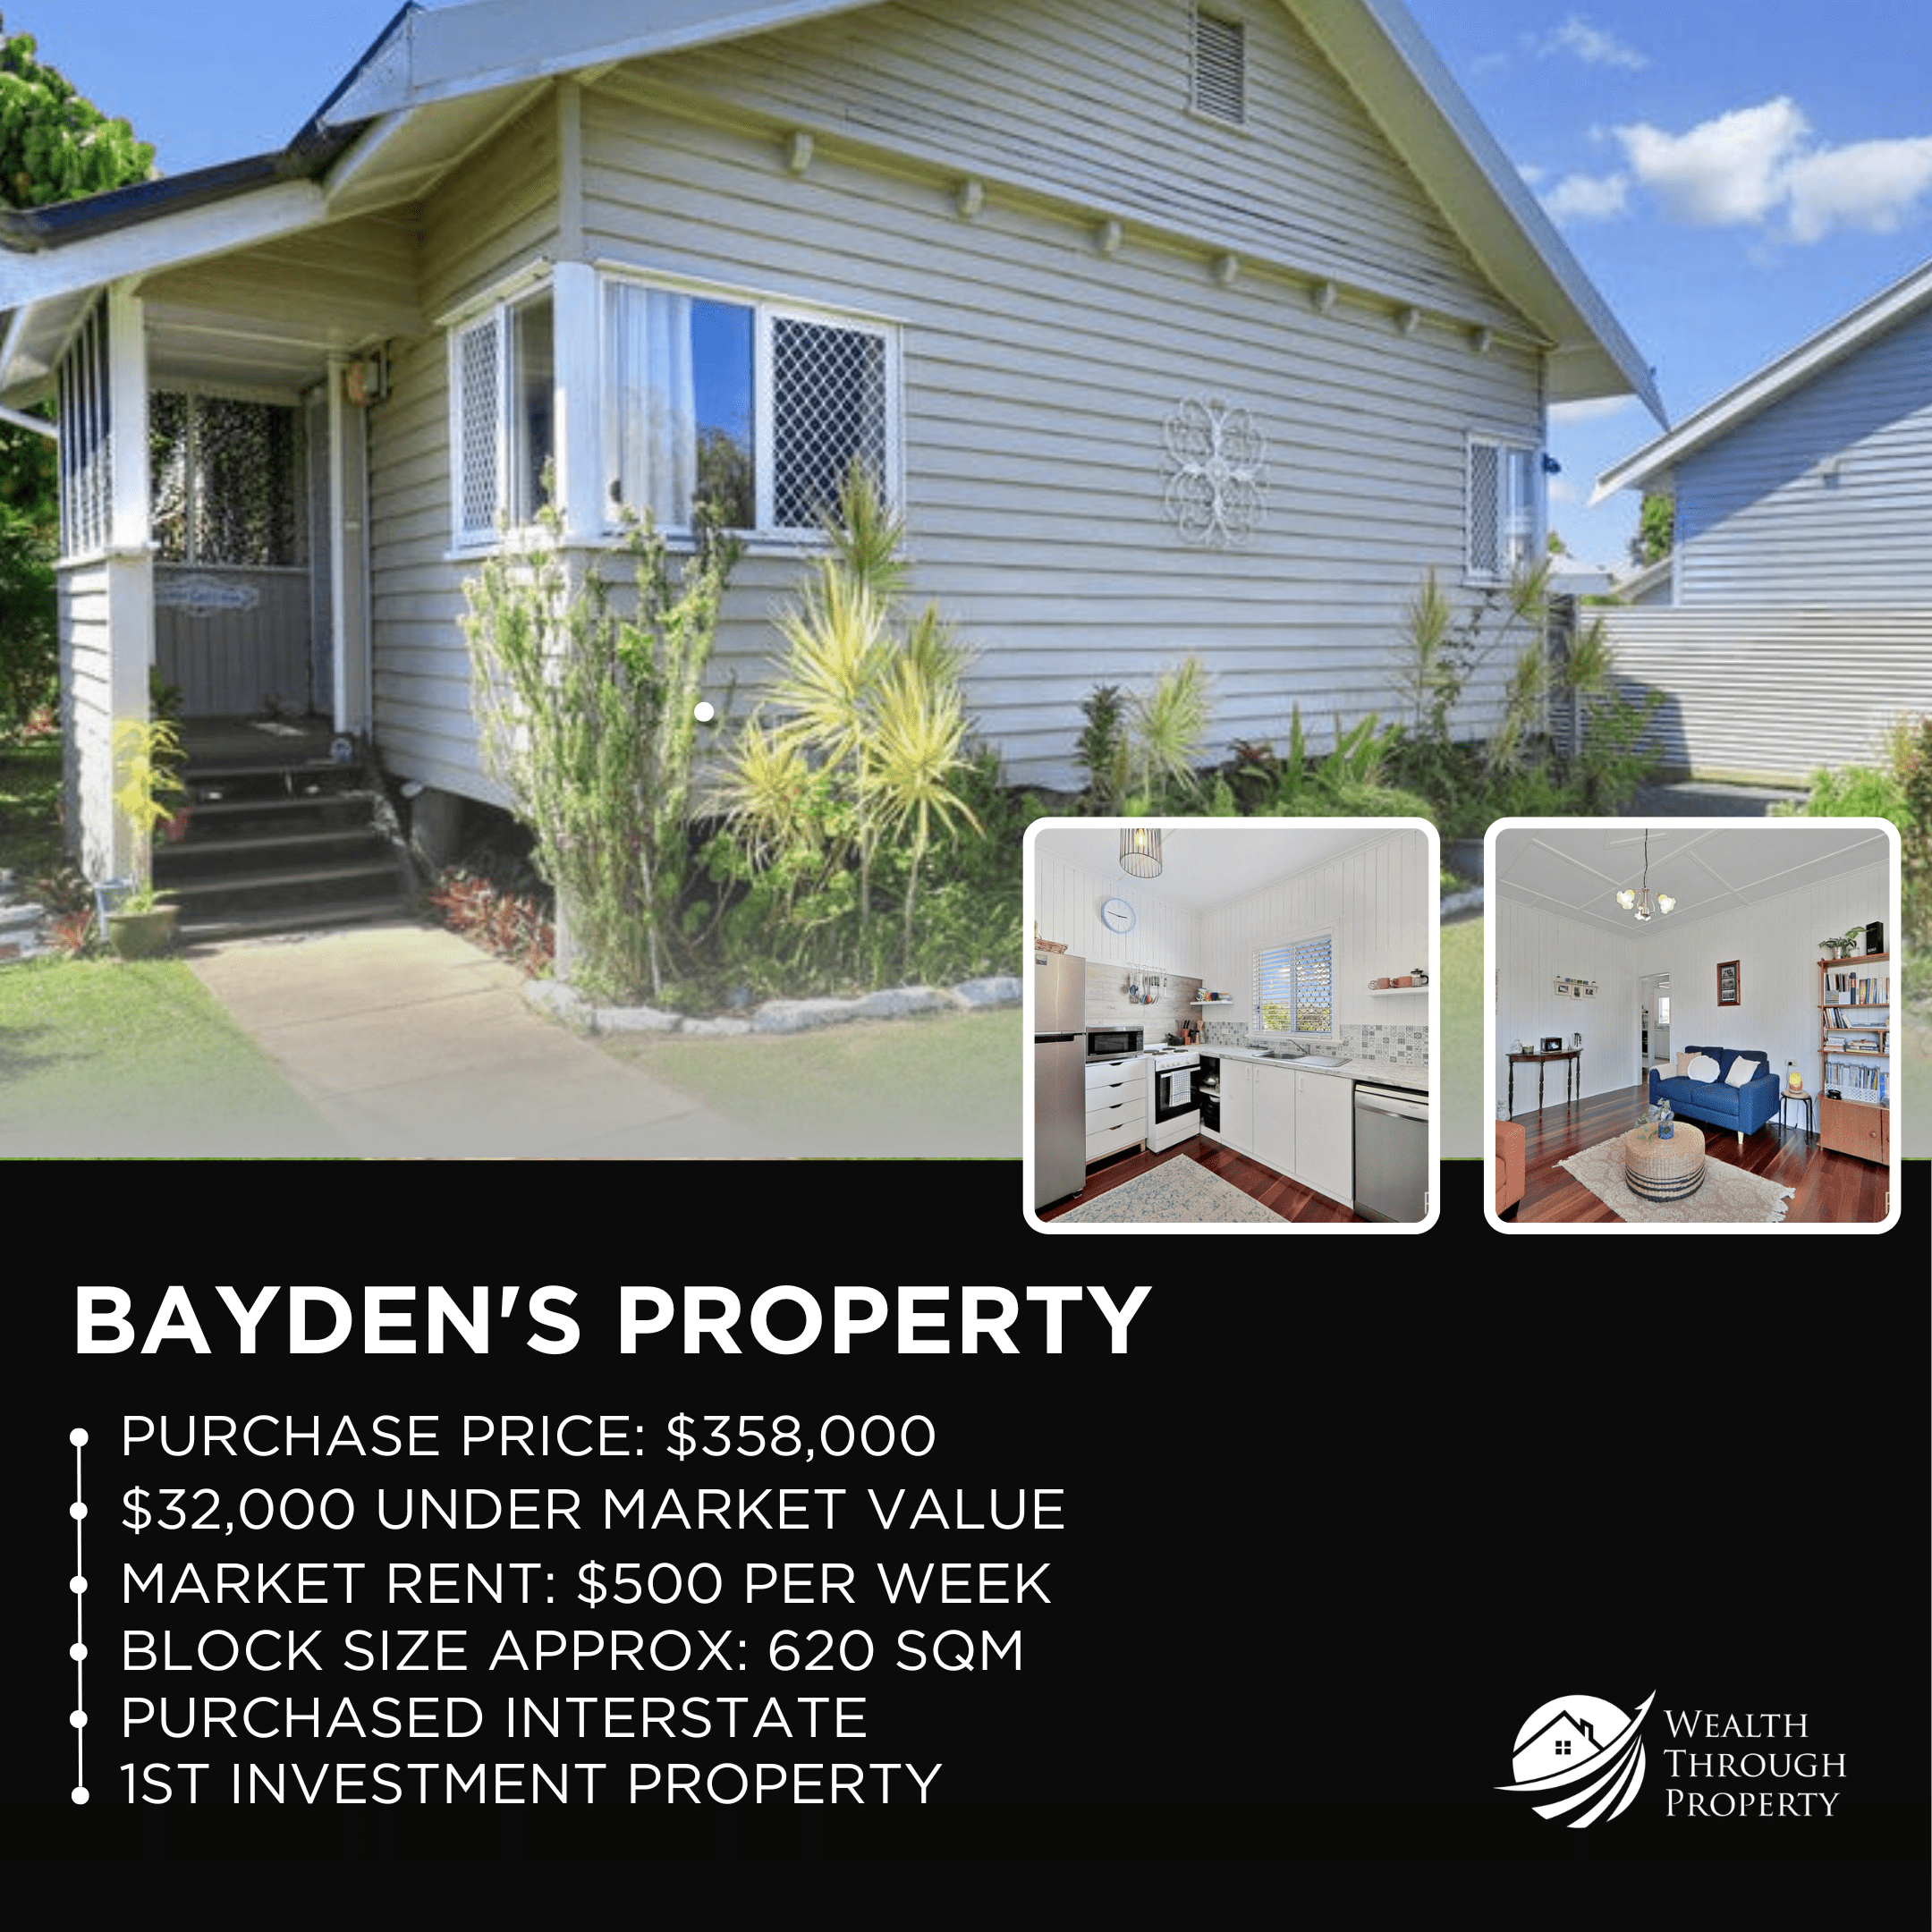 Bayden's property 1 insta post